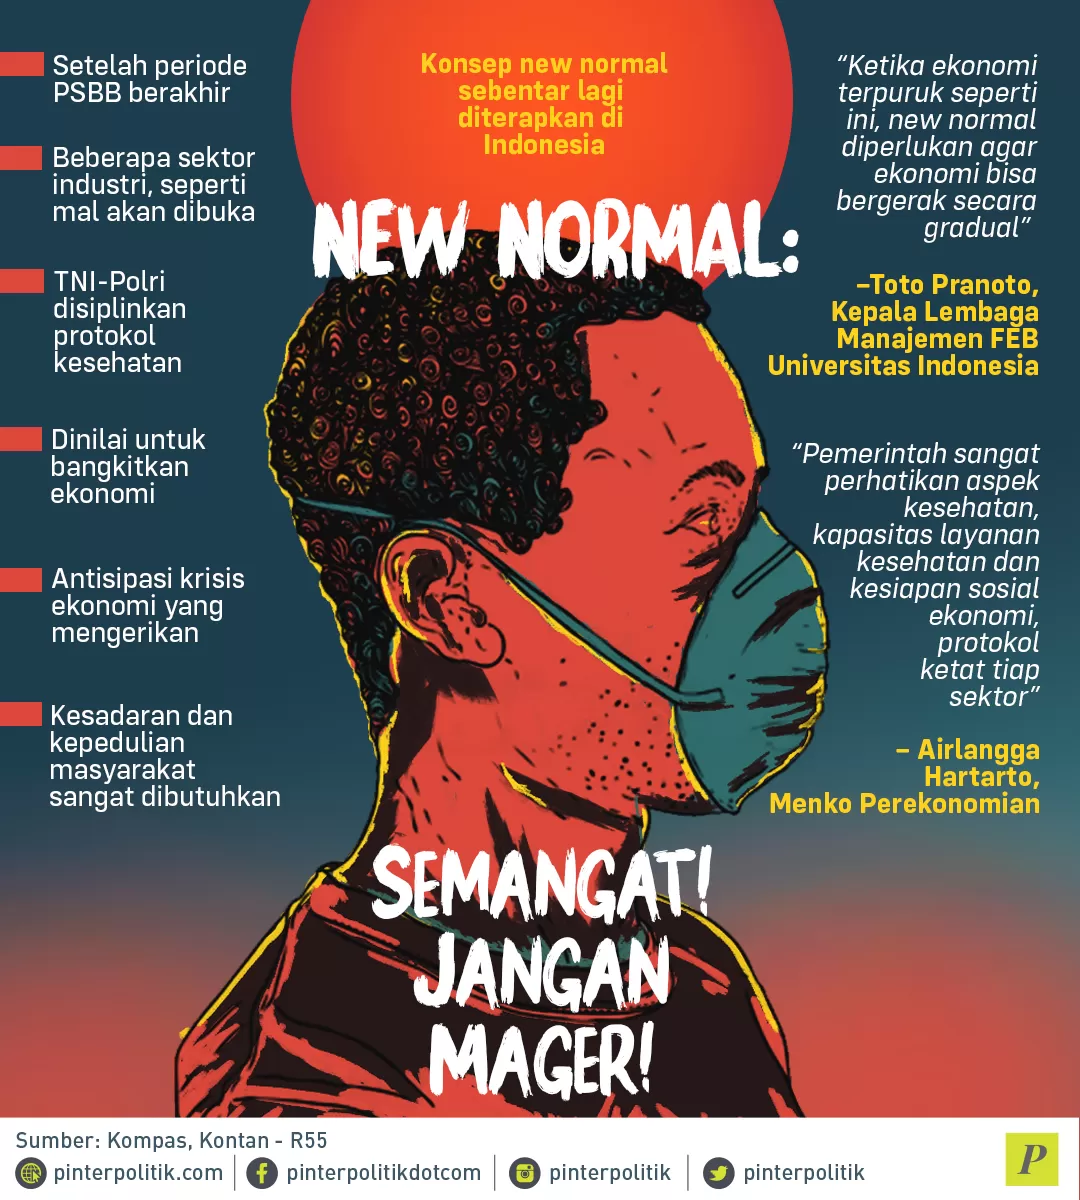 Konsep new normal di Indonesia